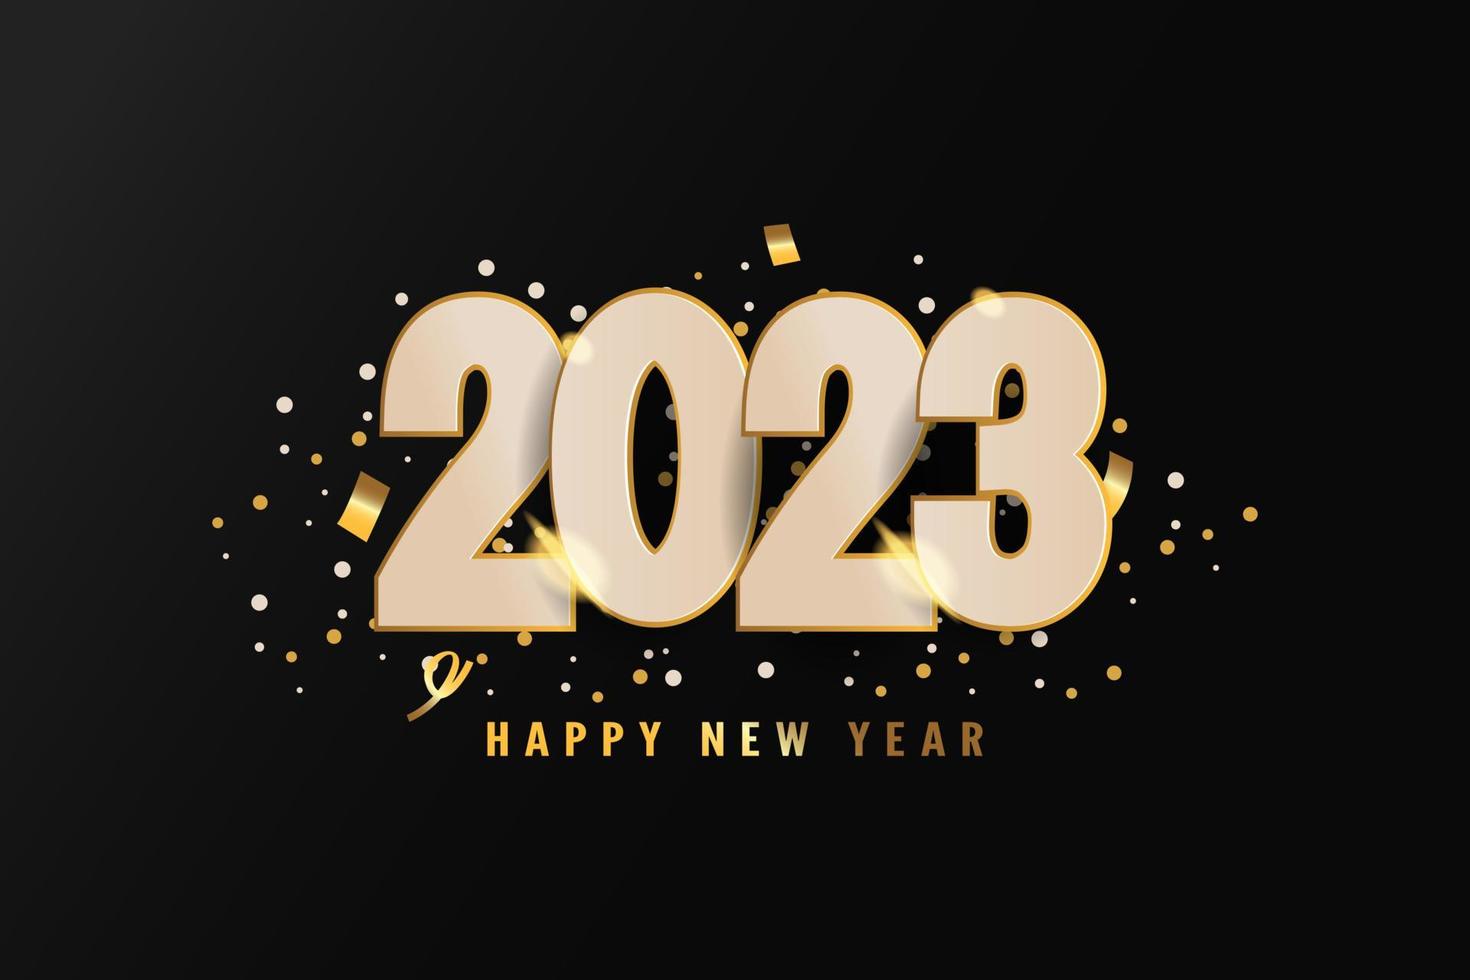 ano novo 2023 com texto dourado vetor